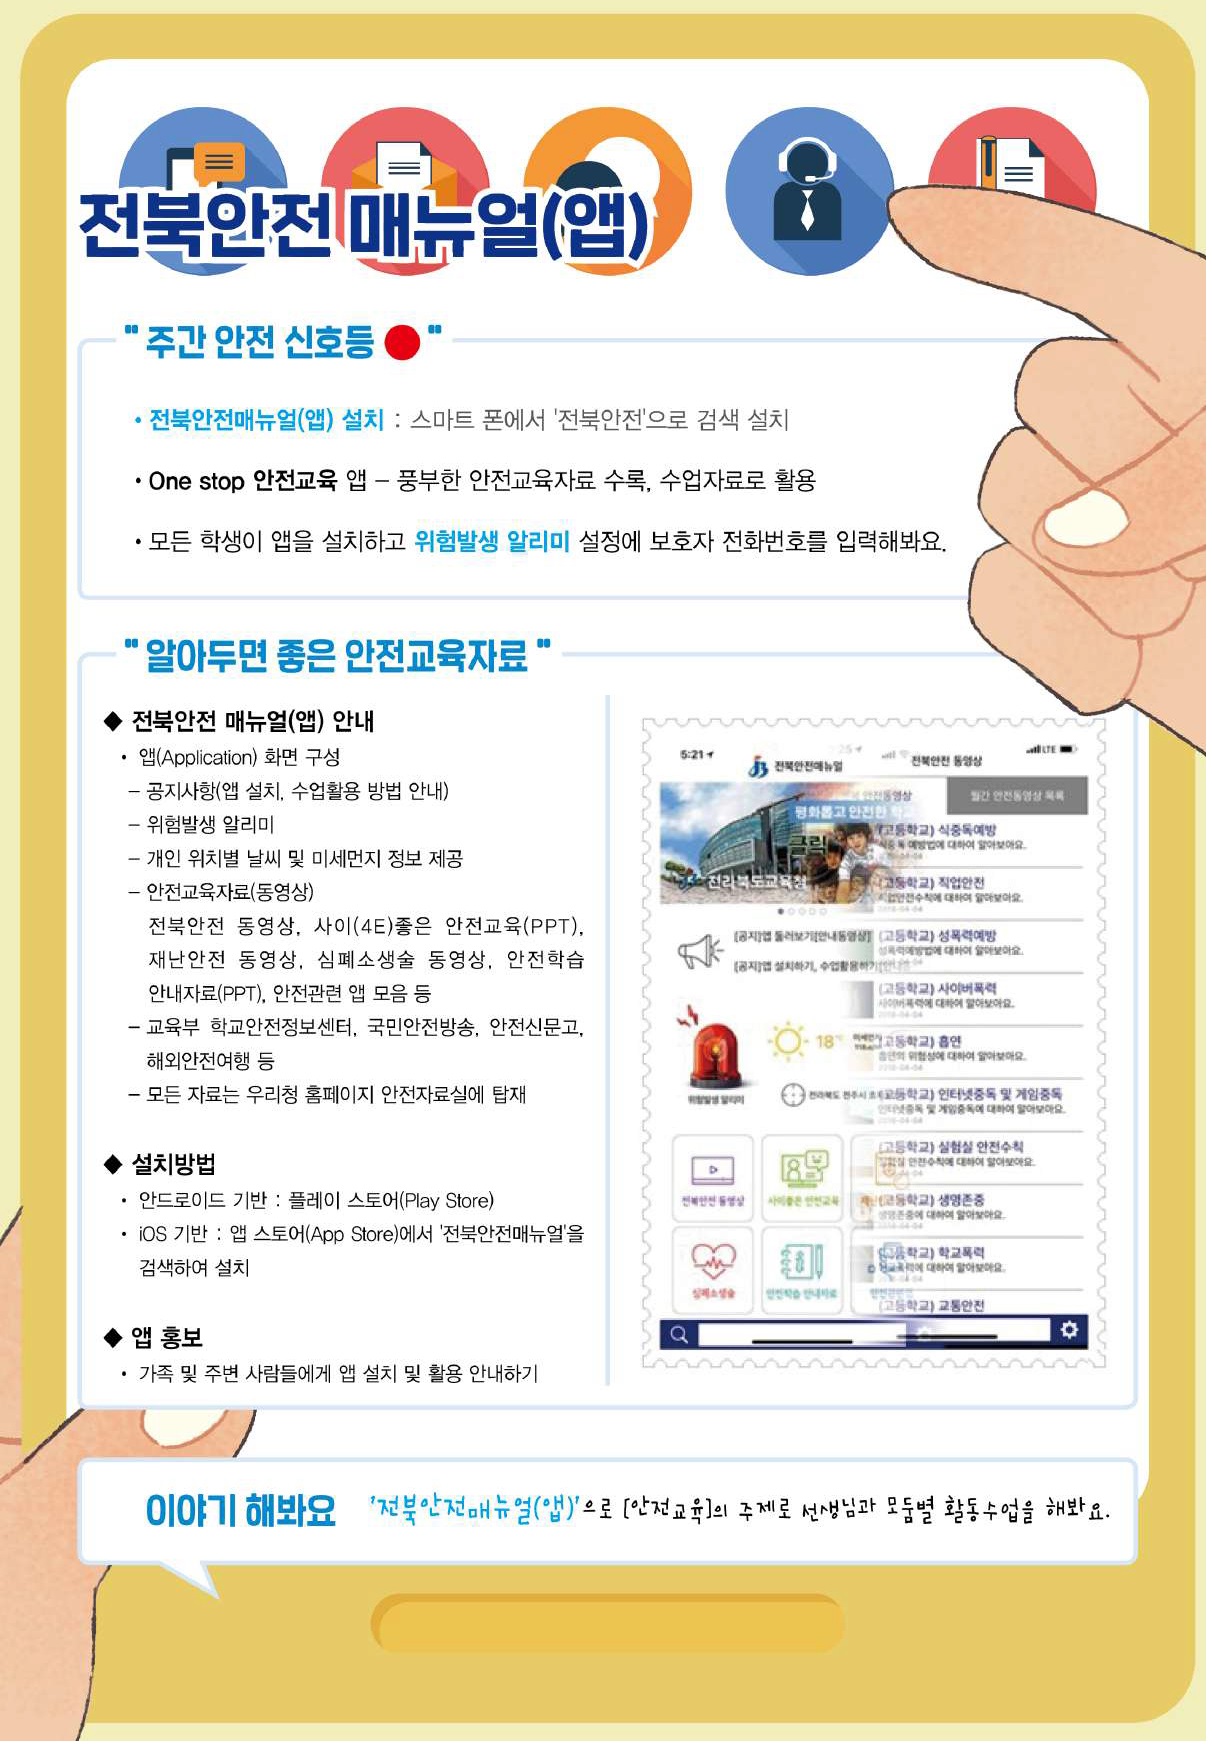 (제40호)전북안전매뉴얼(앱)_사이(4E) 좋은 안전교육자료_19-40호